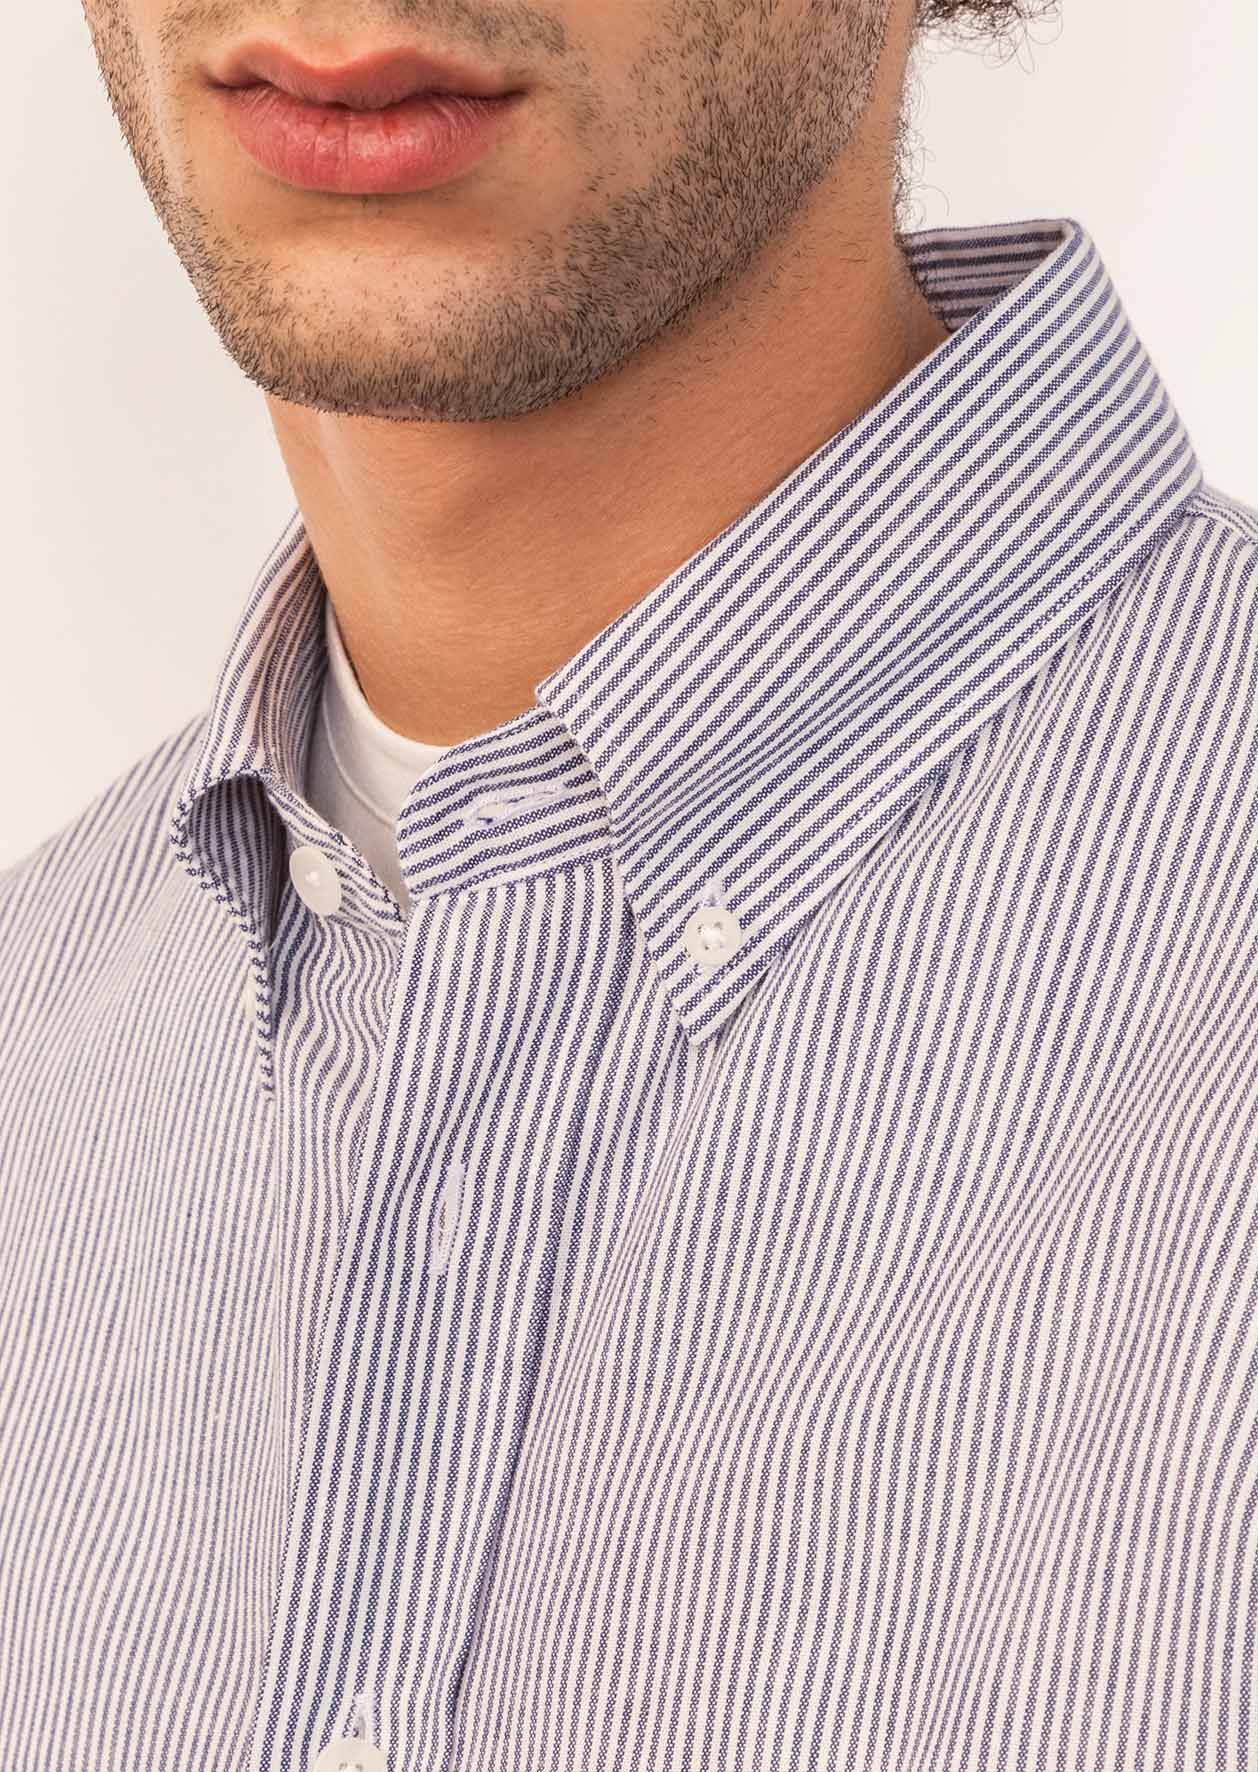 De Bonne Facture - Buttondown shirt - Striped cotton - White & blue